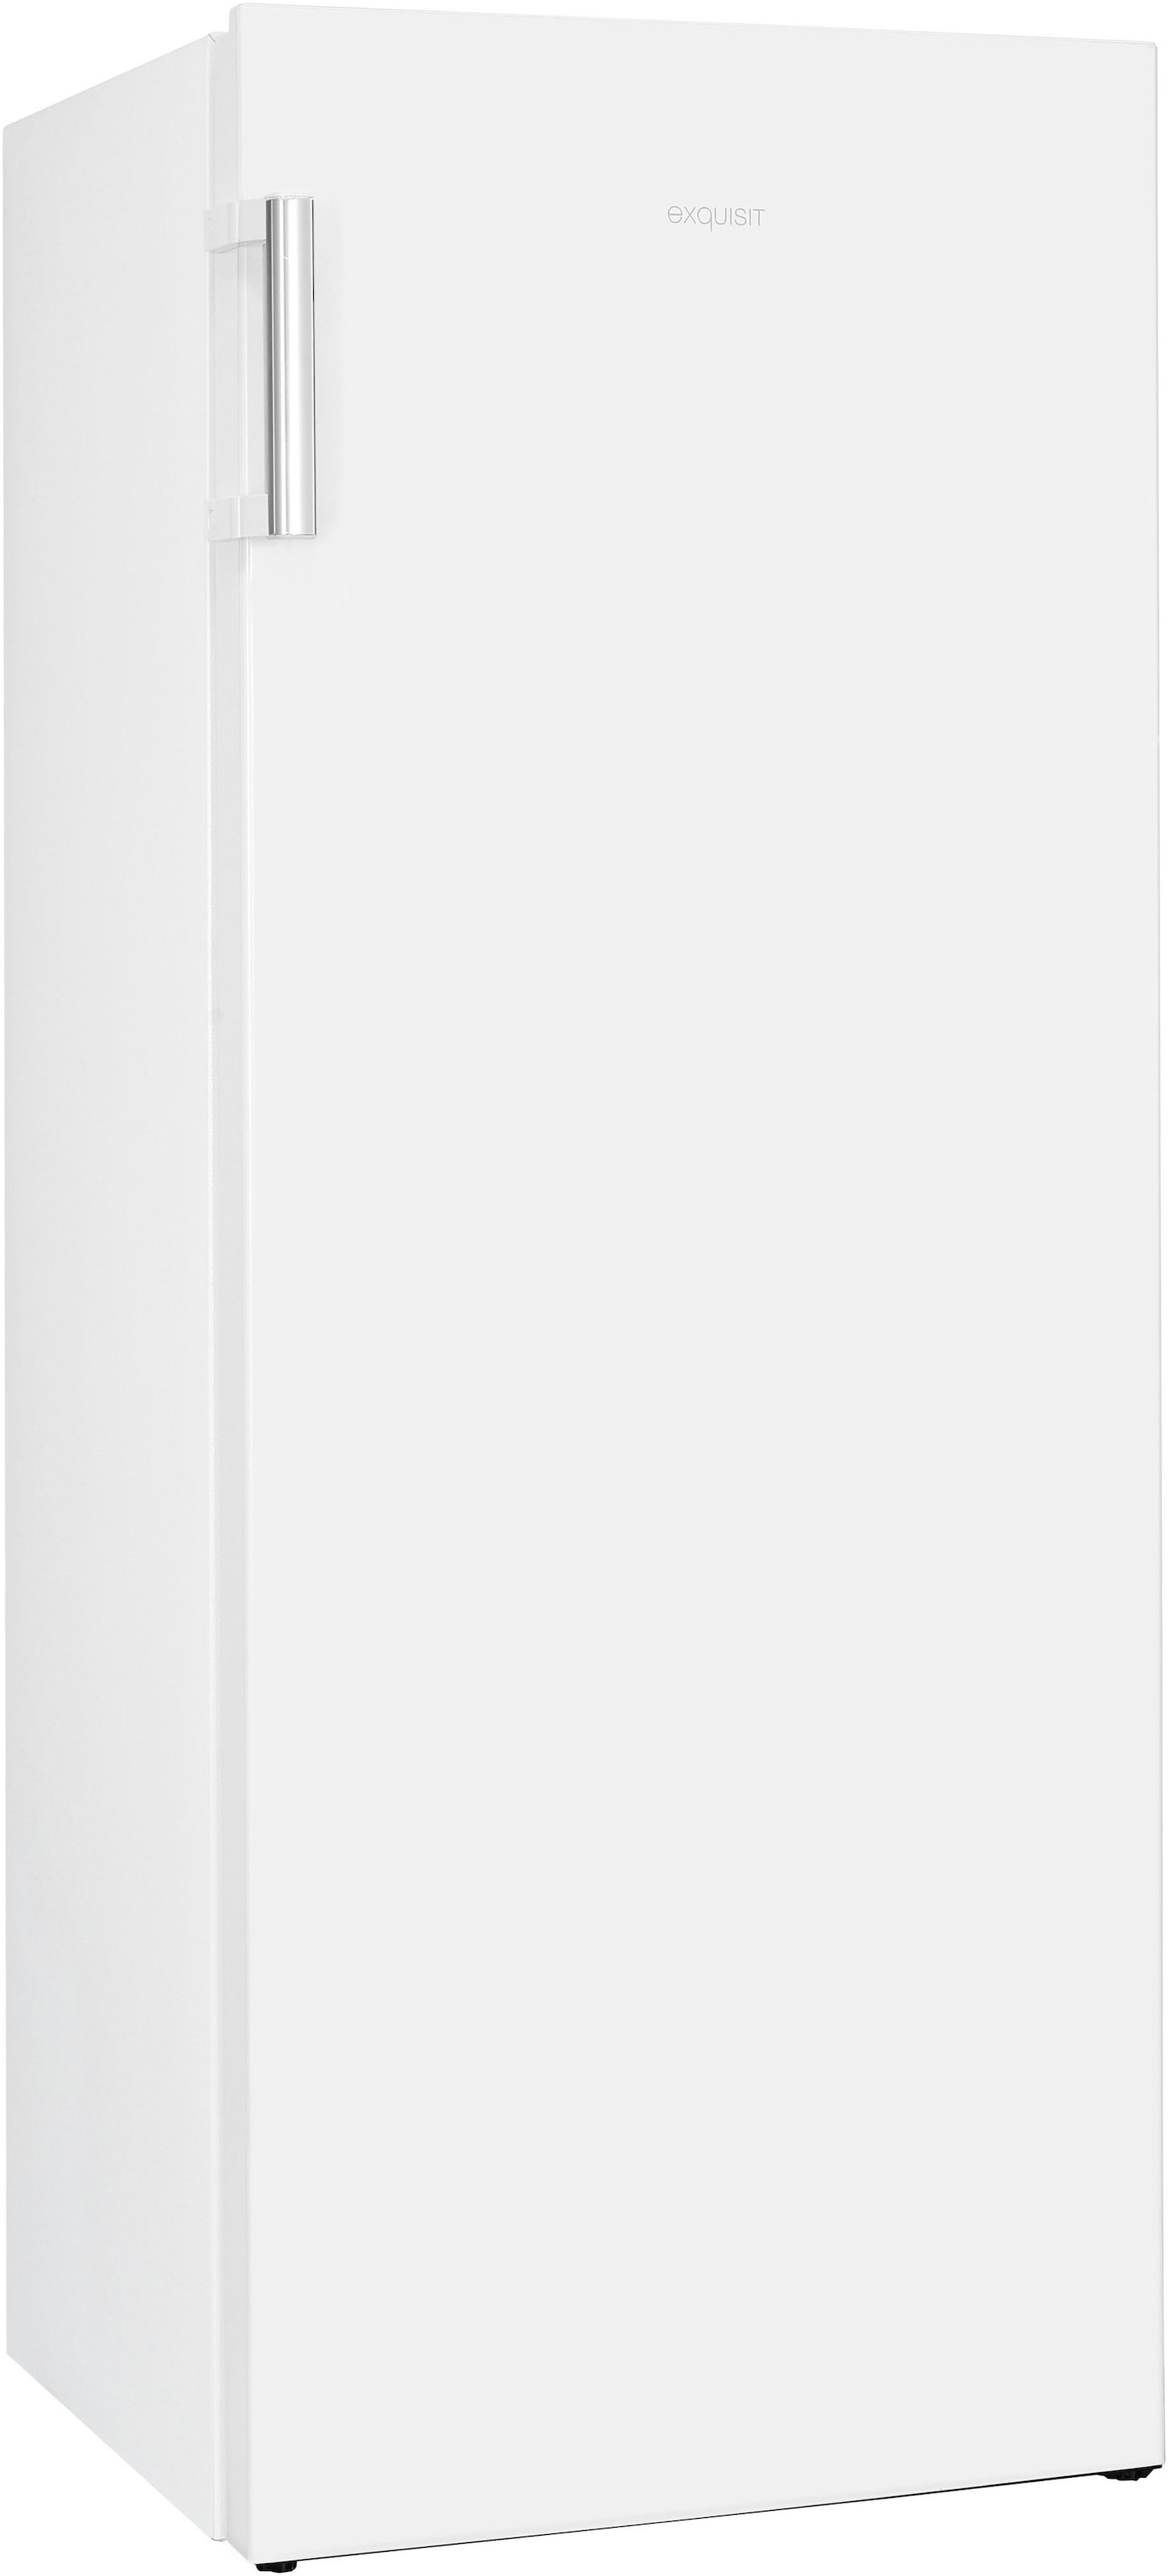 exquisit Gefrierschrank »GS230-H-010E«, 143,4 cm hoch, 55 cm breit